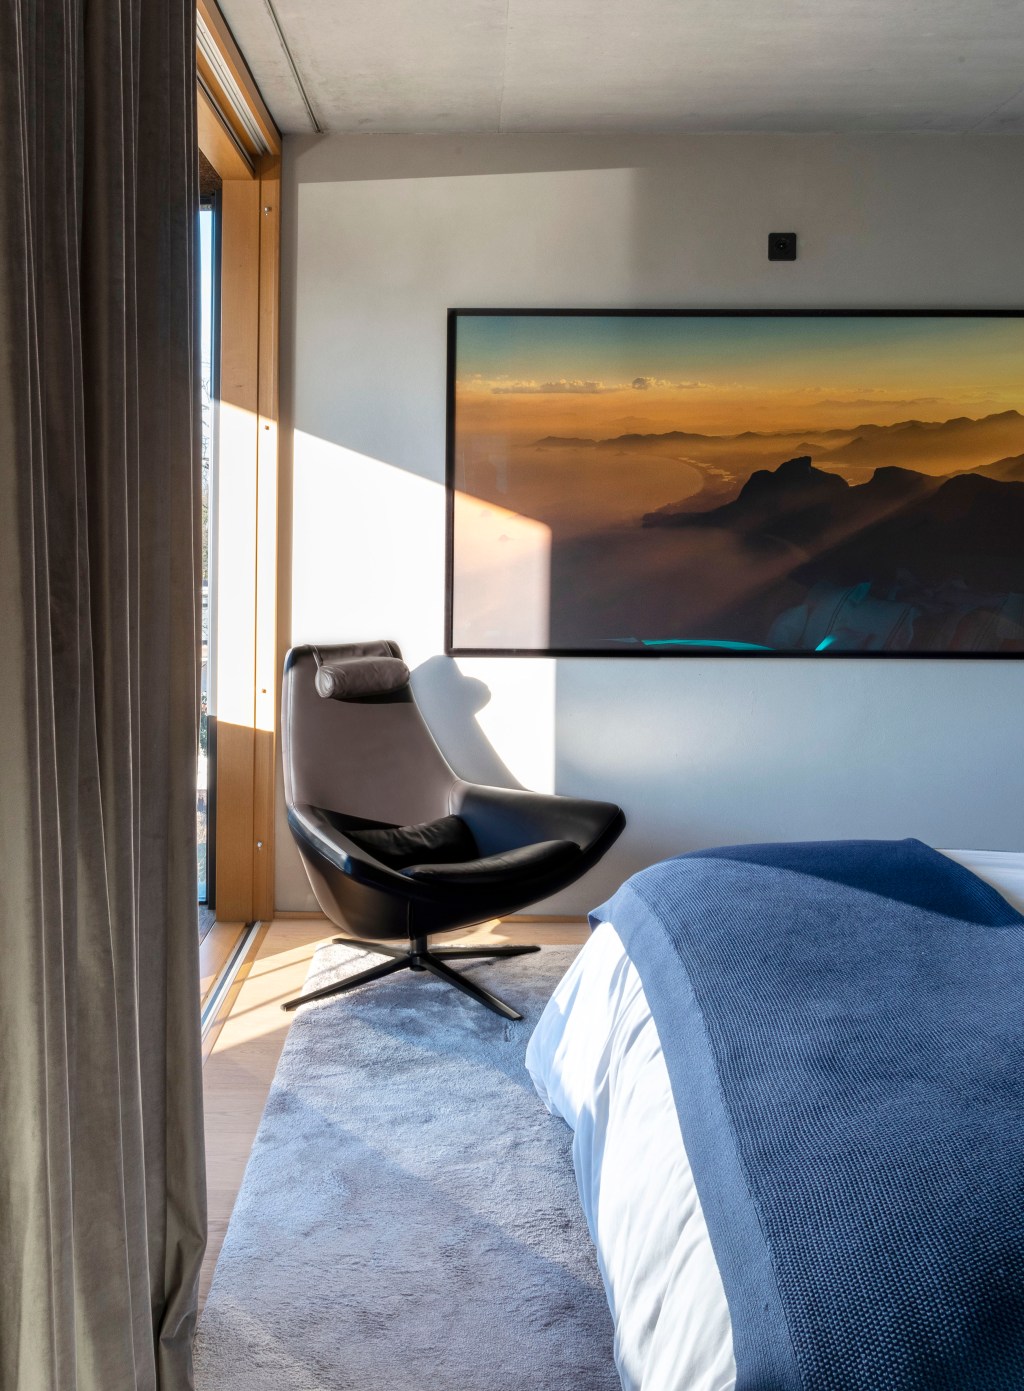 David Bastos projeta apartamento na Suíça repleto de design assinado. Na foto, quarto com varanda e poltrona.